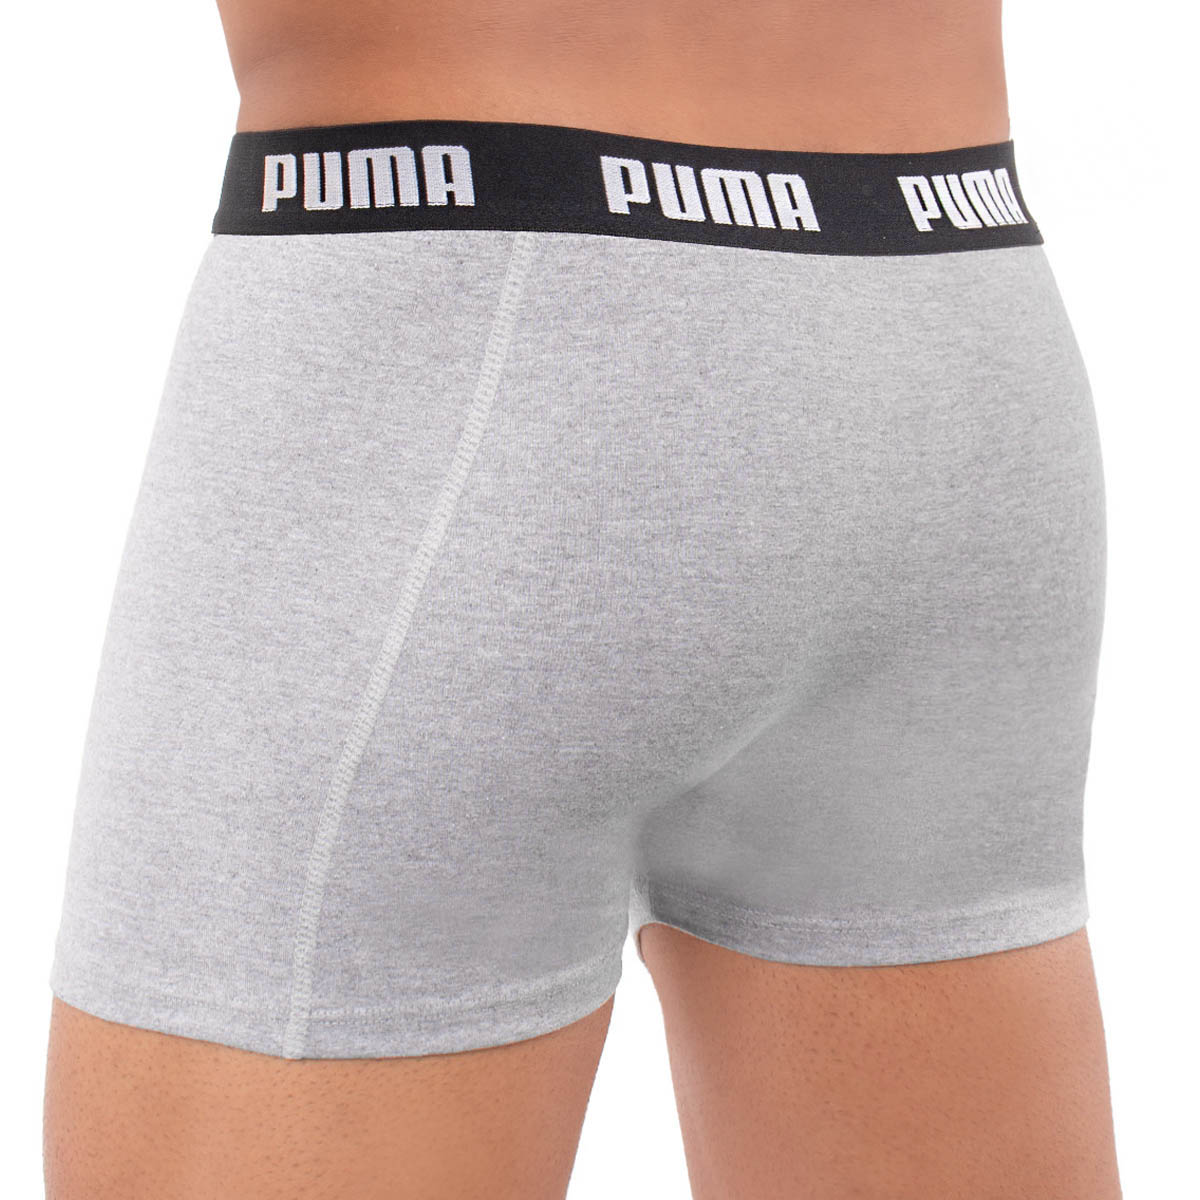 Cueca modelo boxer em algodão Puma